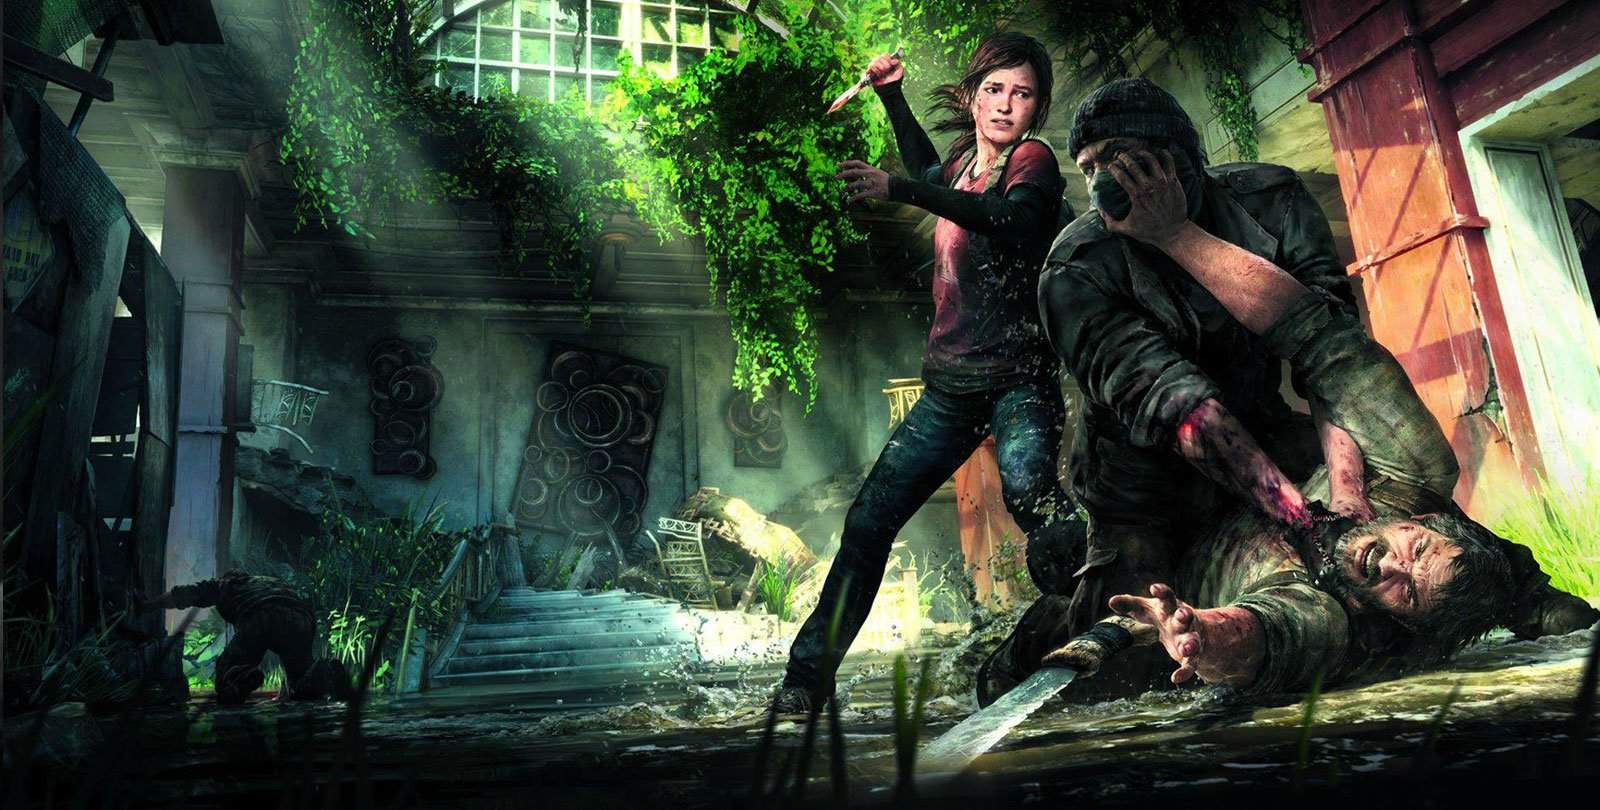 Vamers - FYI - Gaming - The Last of Us Movie Confirmed by Sony - Ellie Saving Joel